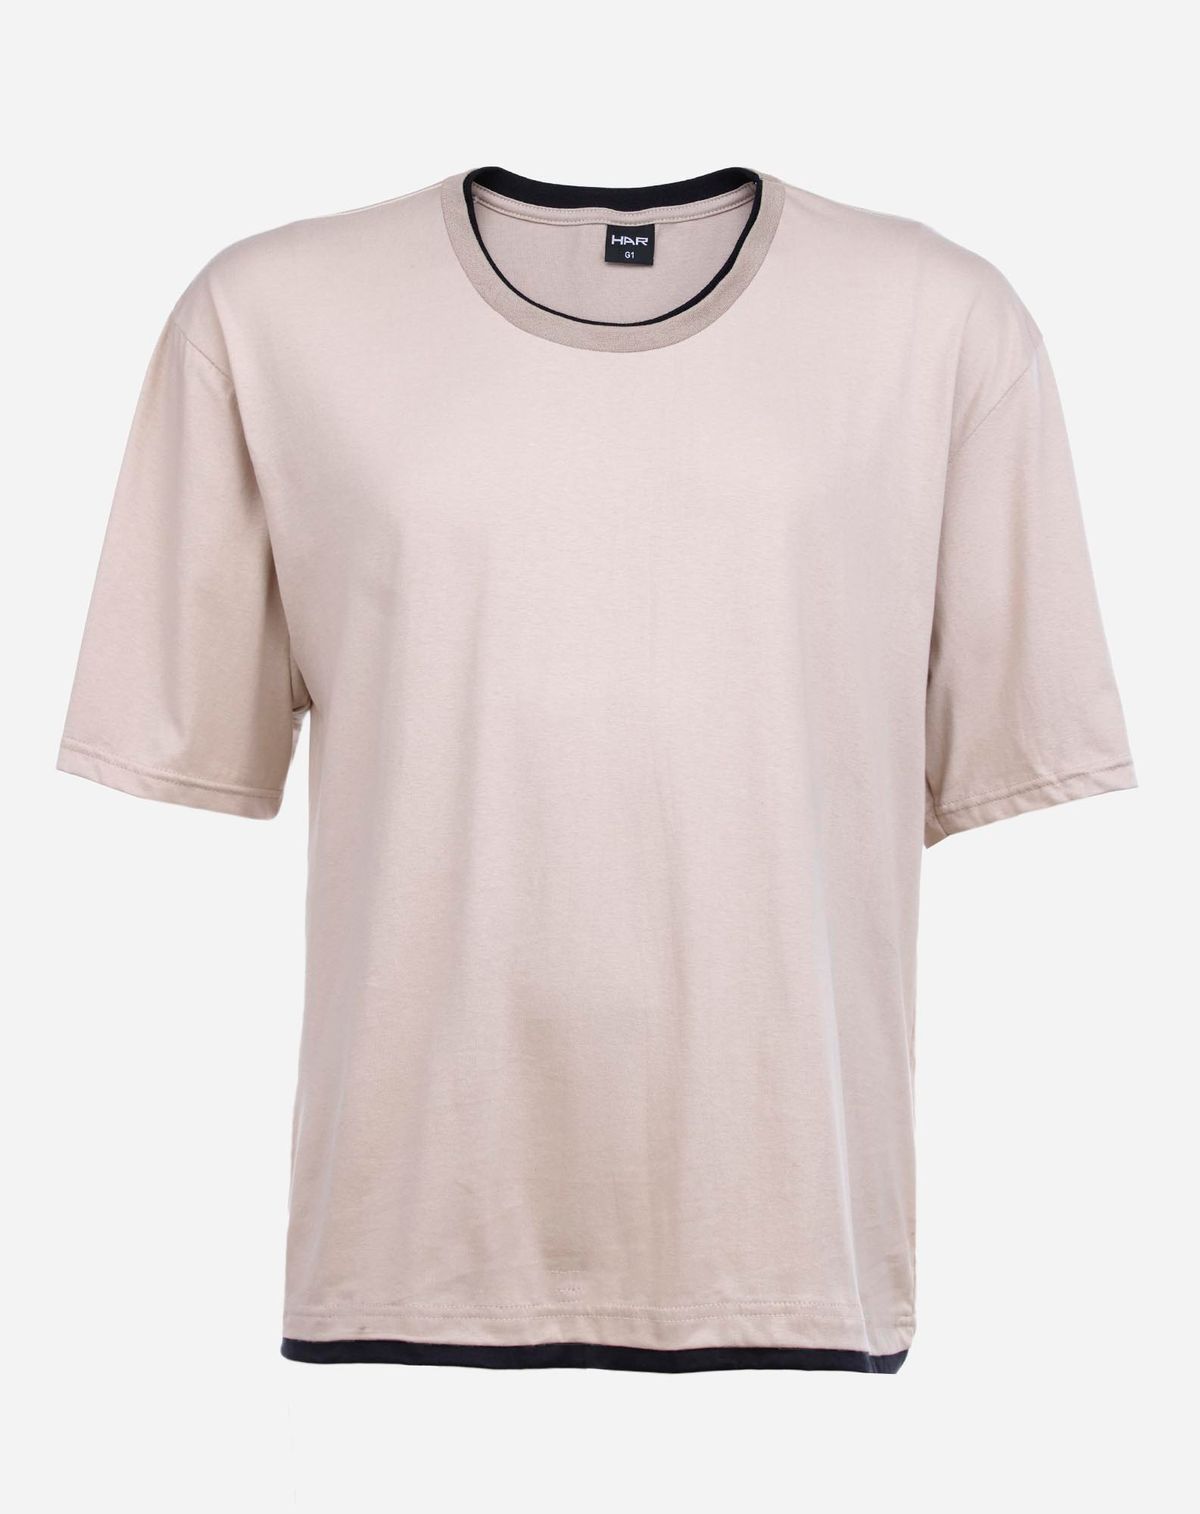 684270008-camiseta-manga-curta-plus-size-masculina-recorte-bege-g2-415